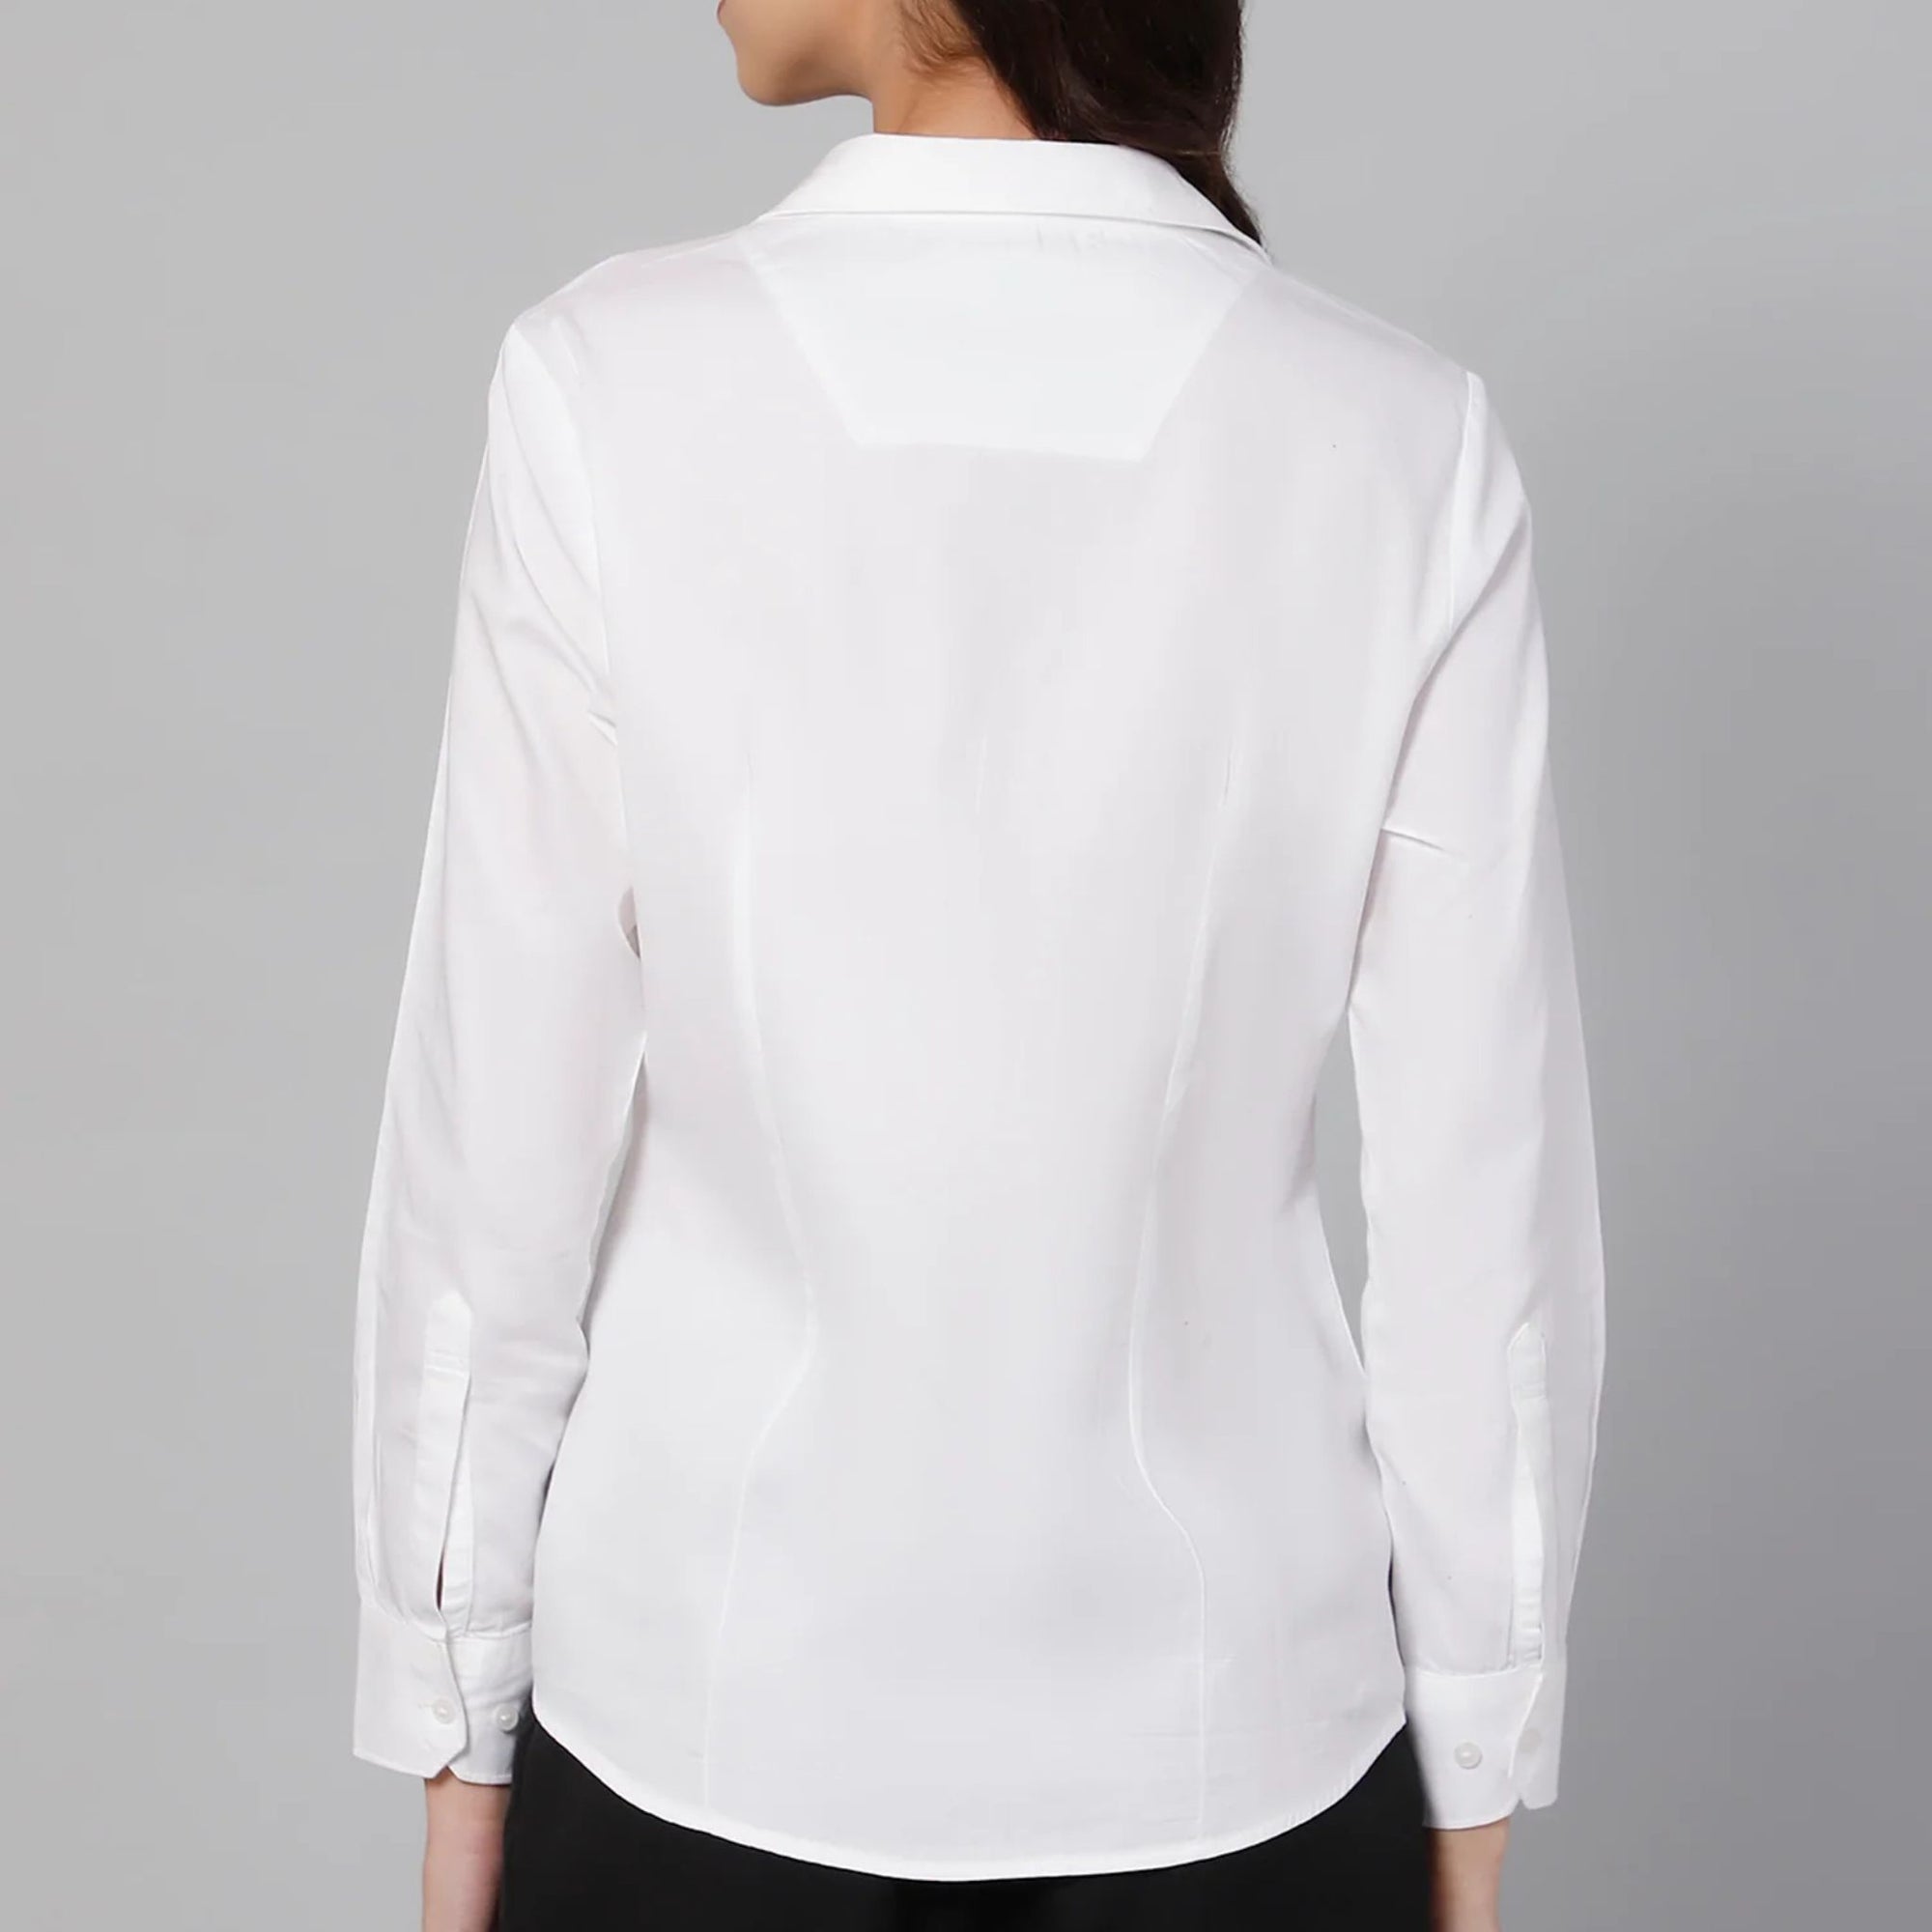 Rare rabbit white formal shirt for women